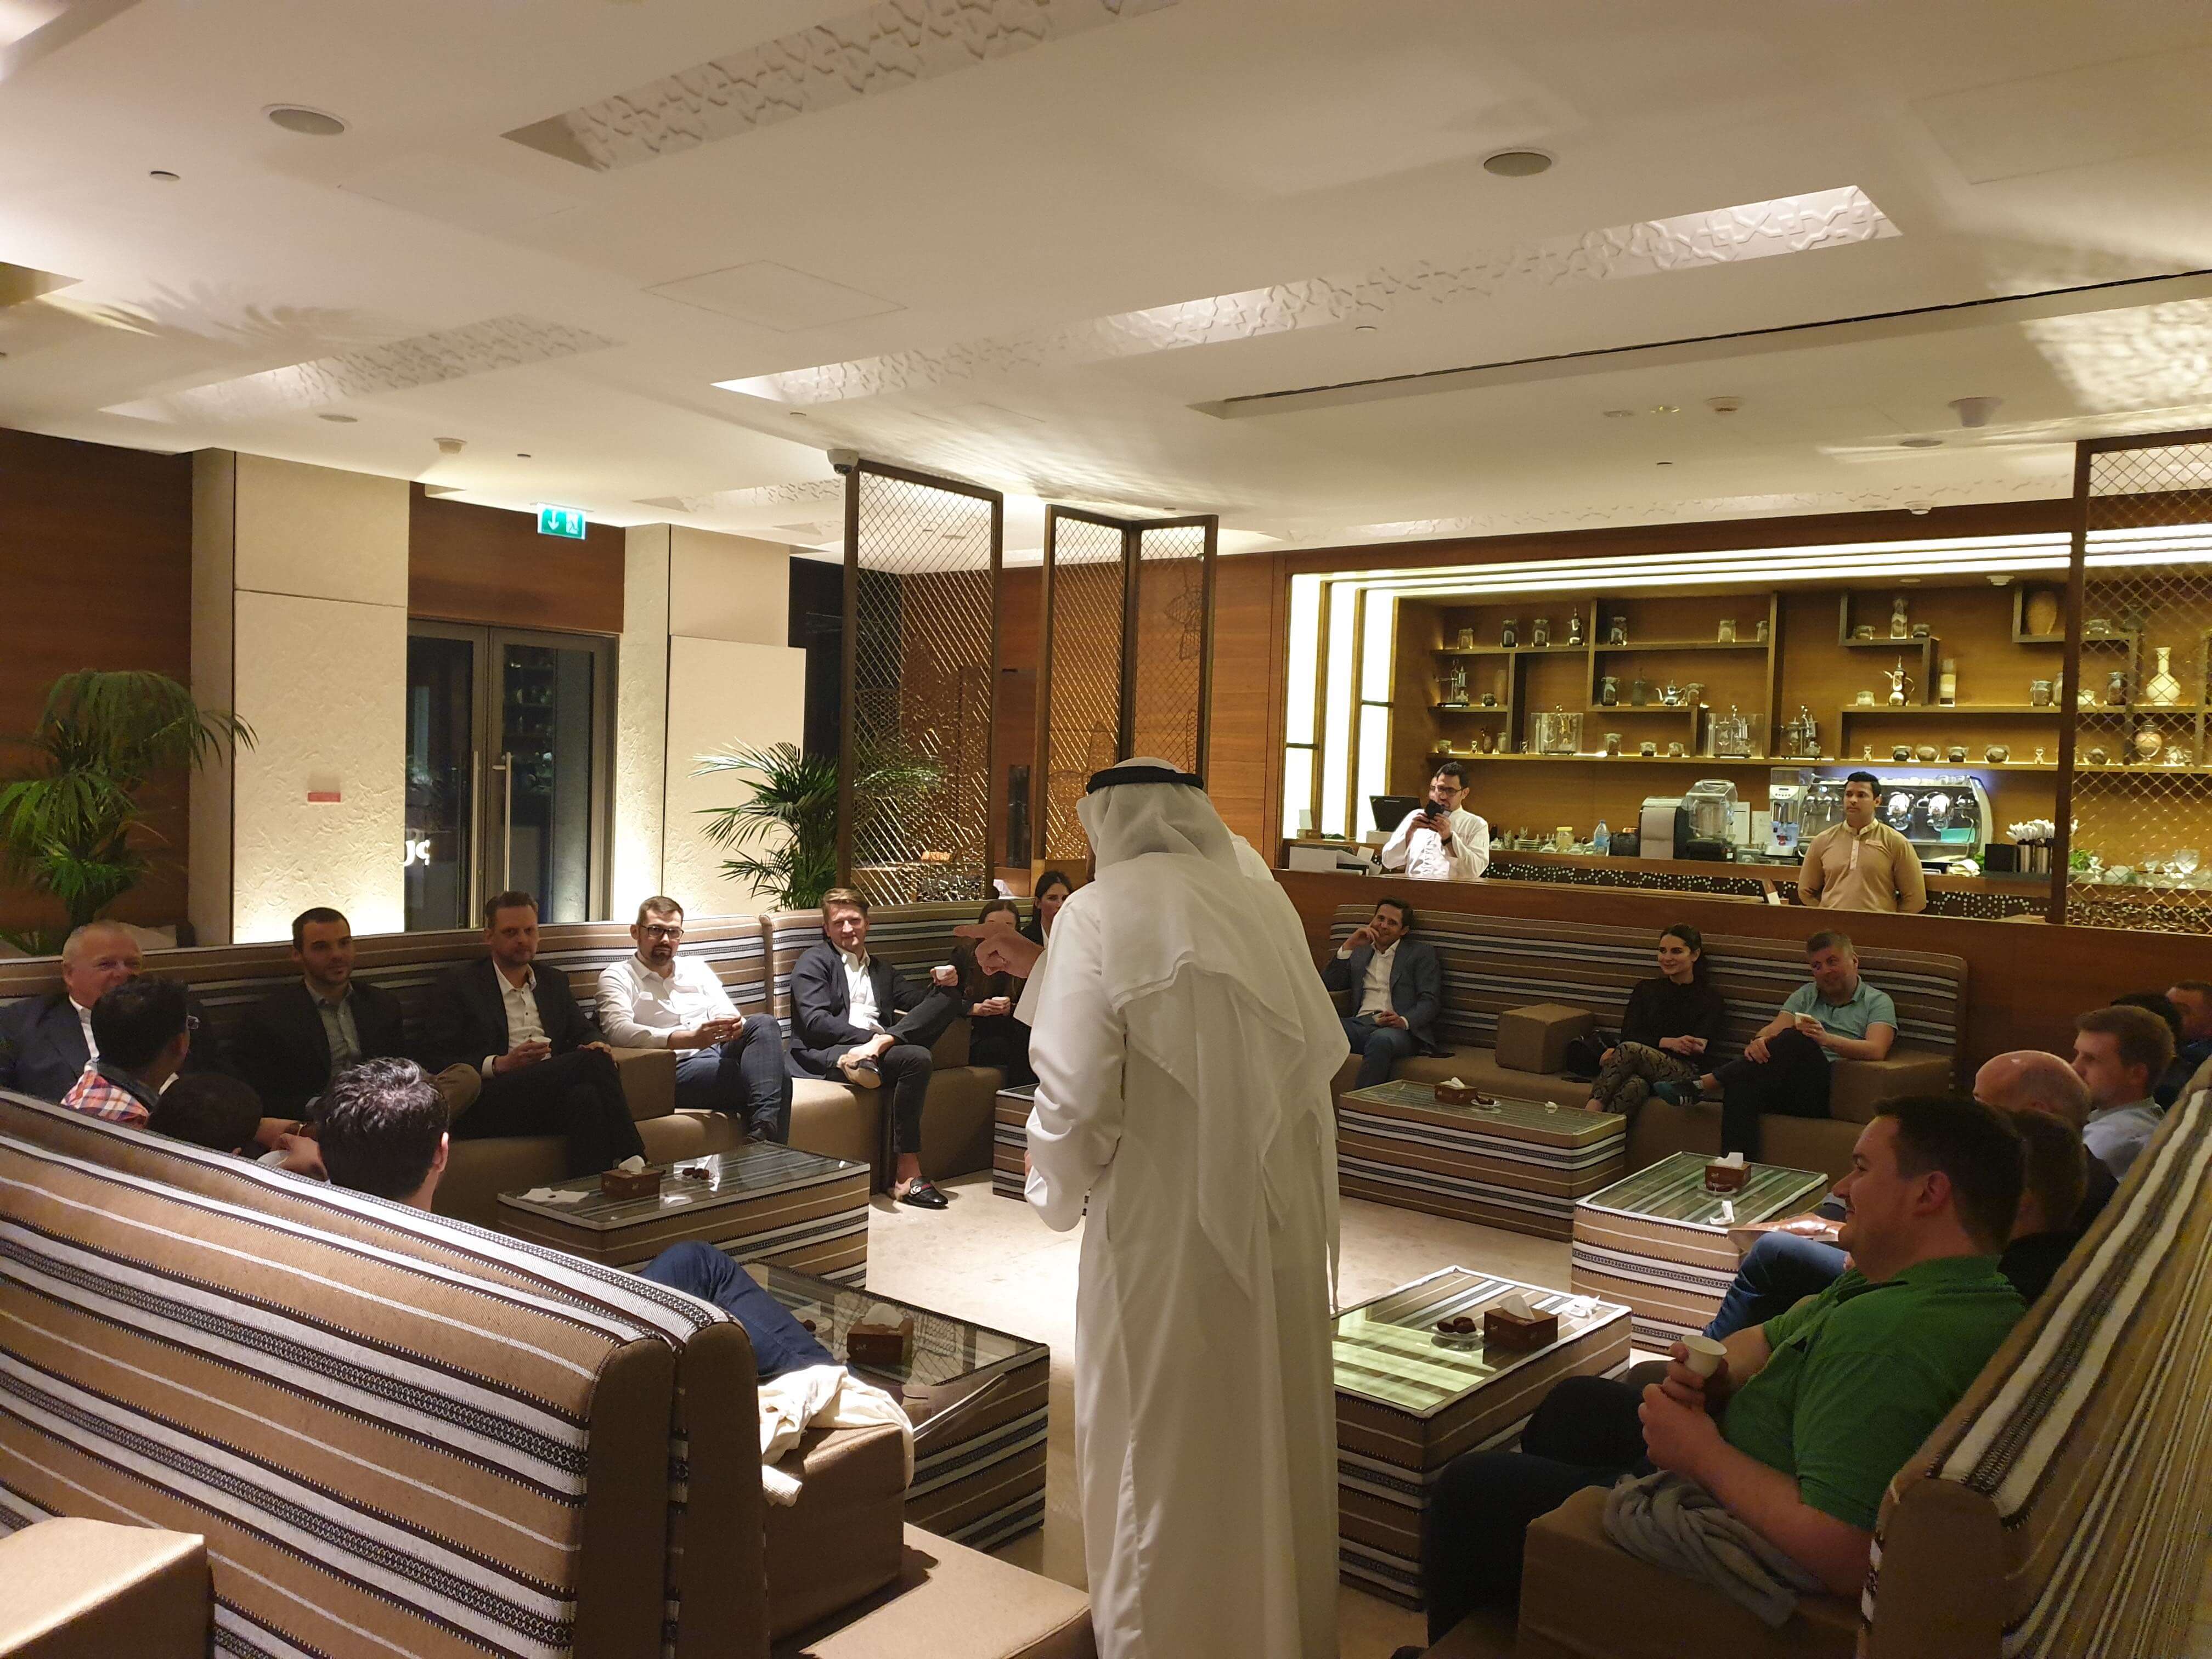 نظرة على المجلس الإماراتي التقليدي في مطعم الرمال السبعة